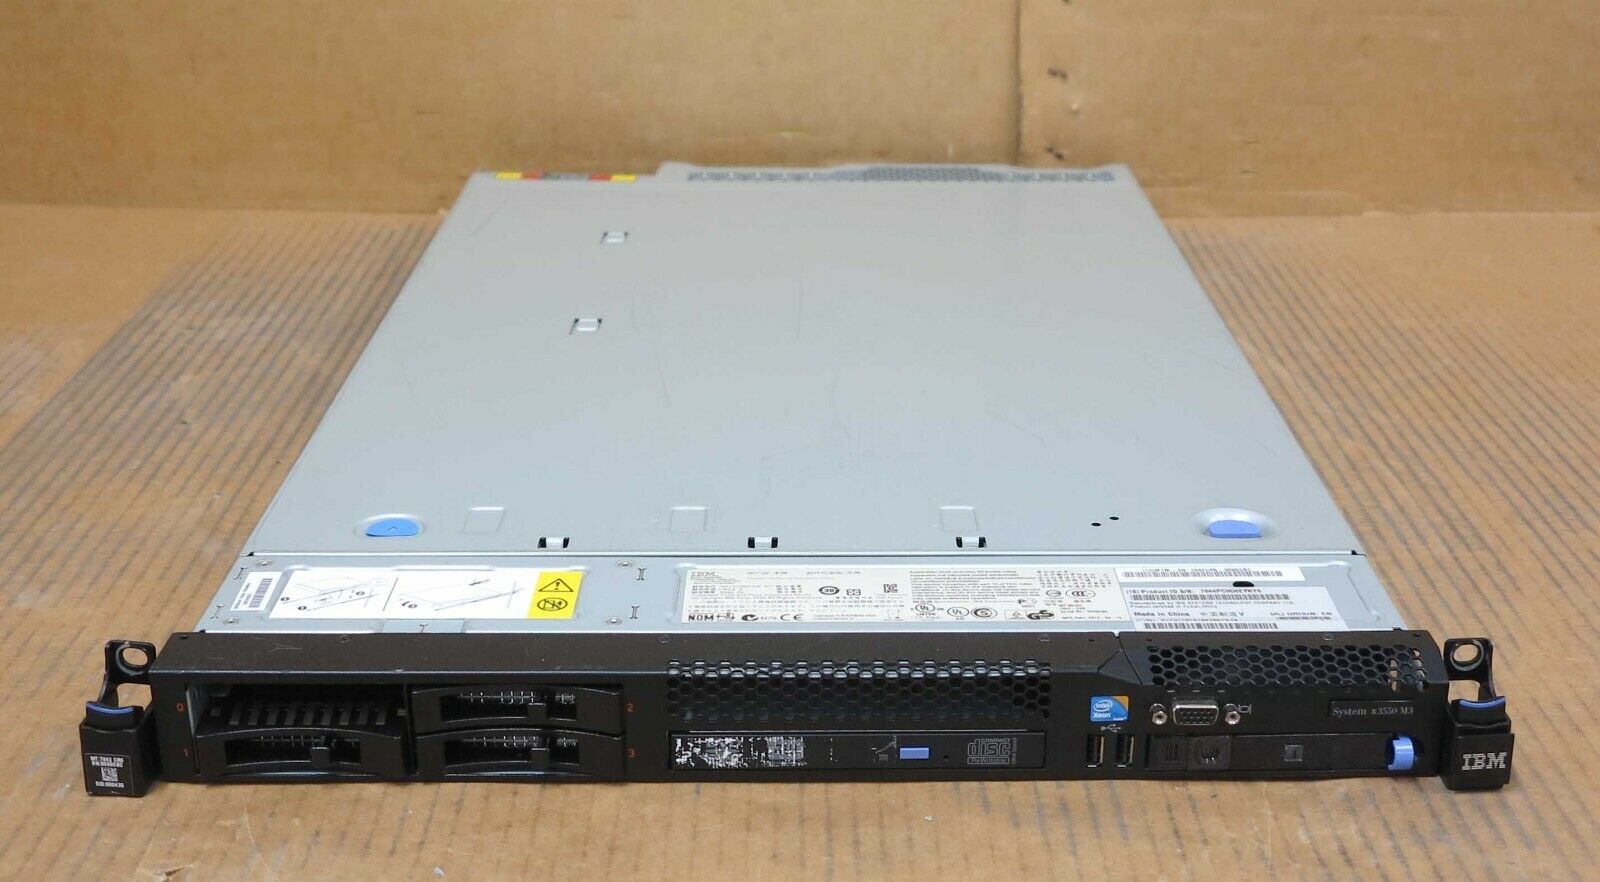 IBM System x3550 M3 7042-CR6 4-C E5630 2.53GHz 16GB Ram 4x Bay 1U RAID Server